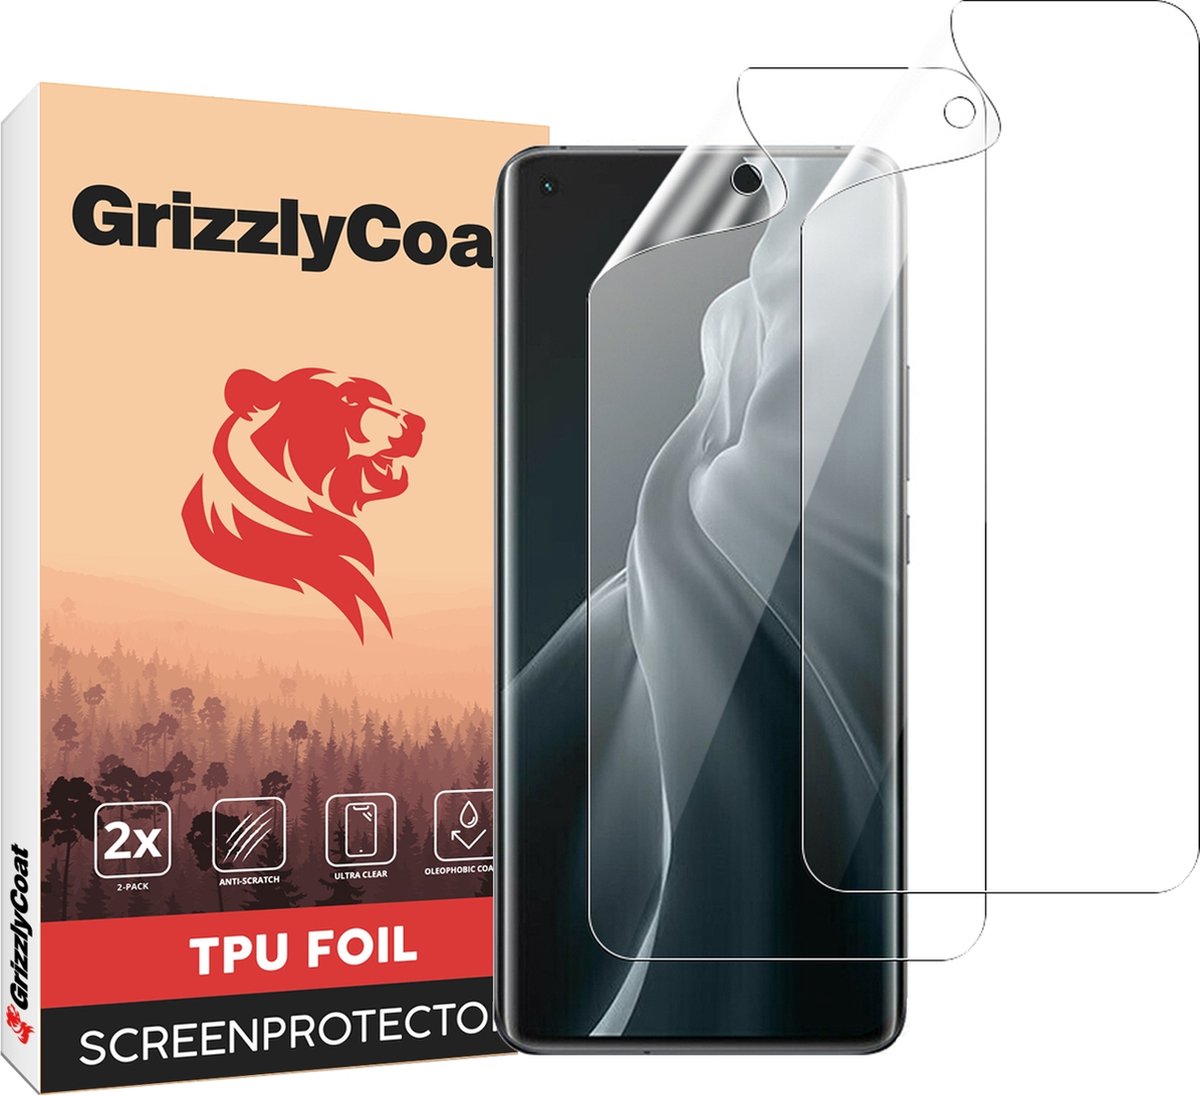 GrizzlyCoat - Screenprotector geschikt voor Xiaomi Mi 11 Hydrogel TPU | GrizzlyCoat Screenprotector - Case Friendly + Installatie Frame (2-Pack)